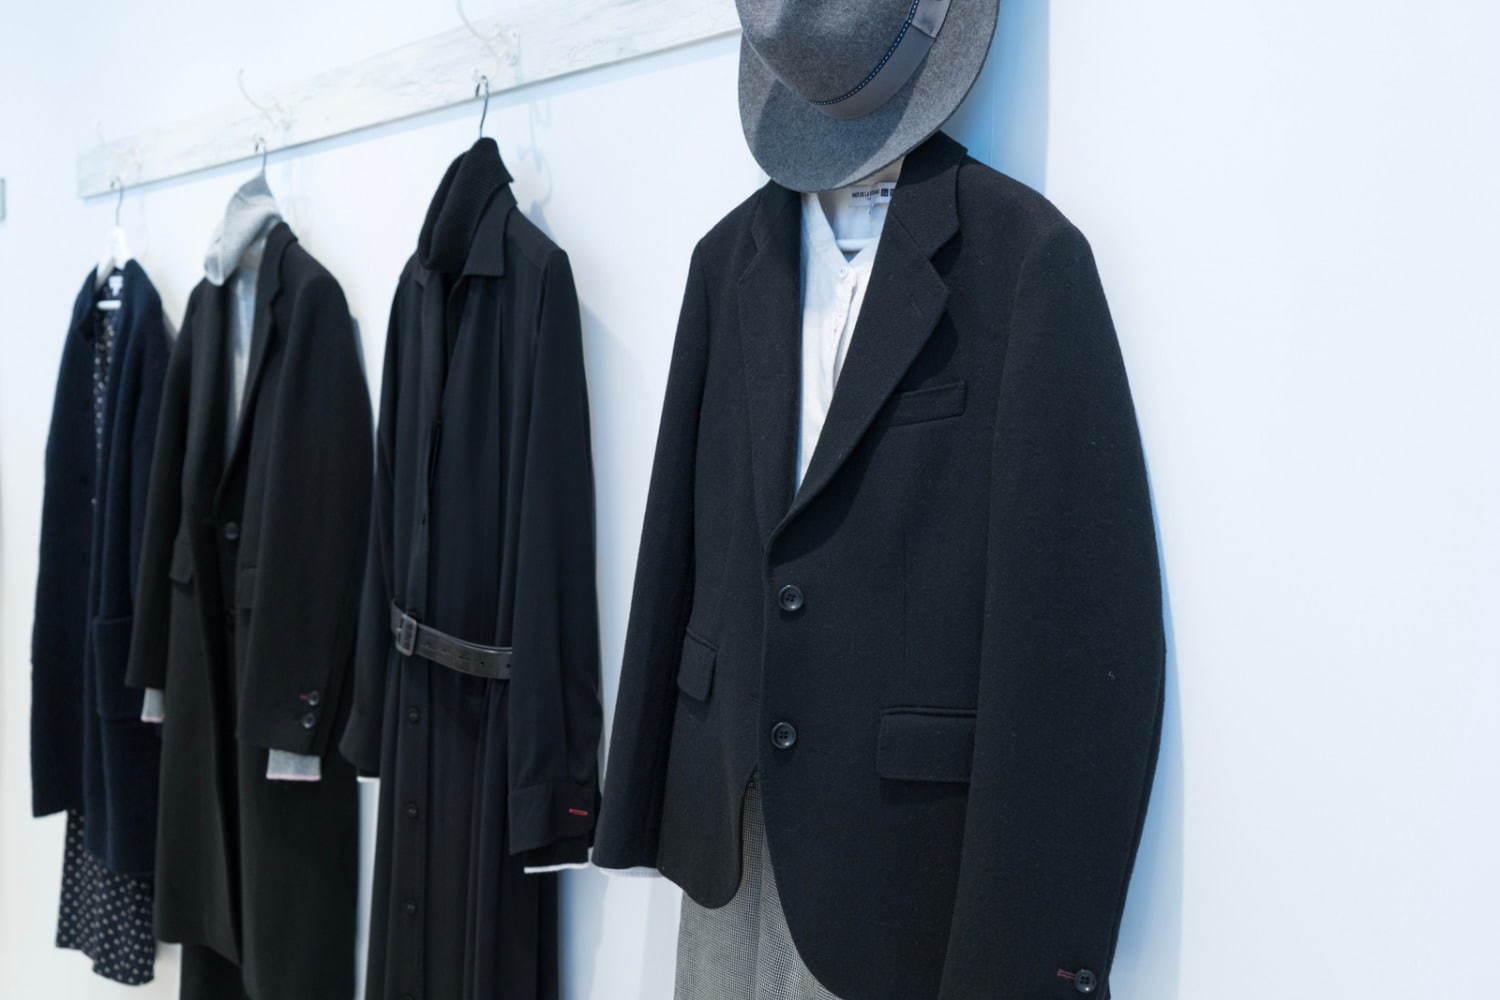 ユニクロ イネス ド ラ フレサンジュ 19秋冬 メインカラーに 黒 初採用 ワンピースやコート ファッションプレス